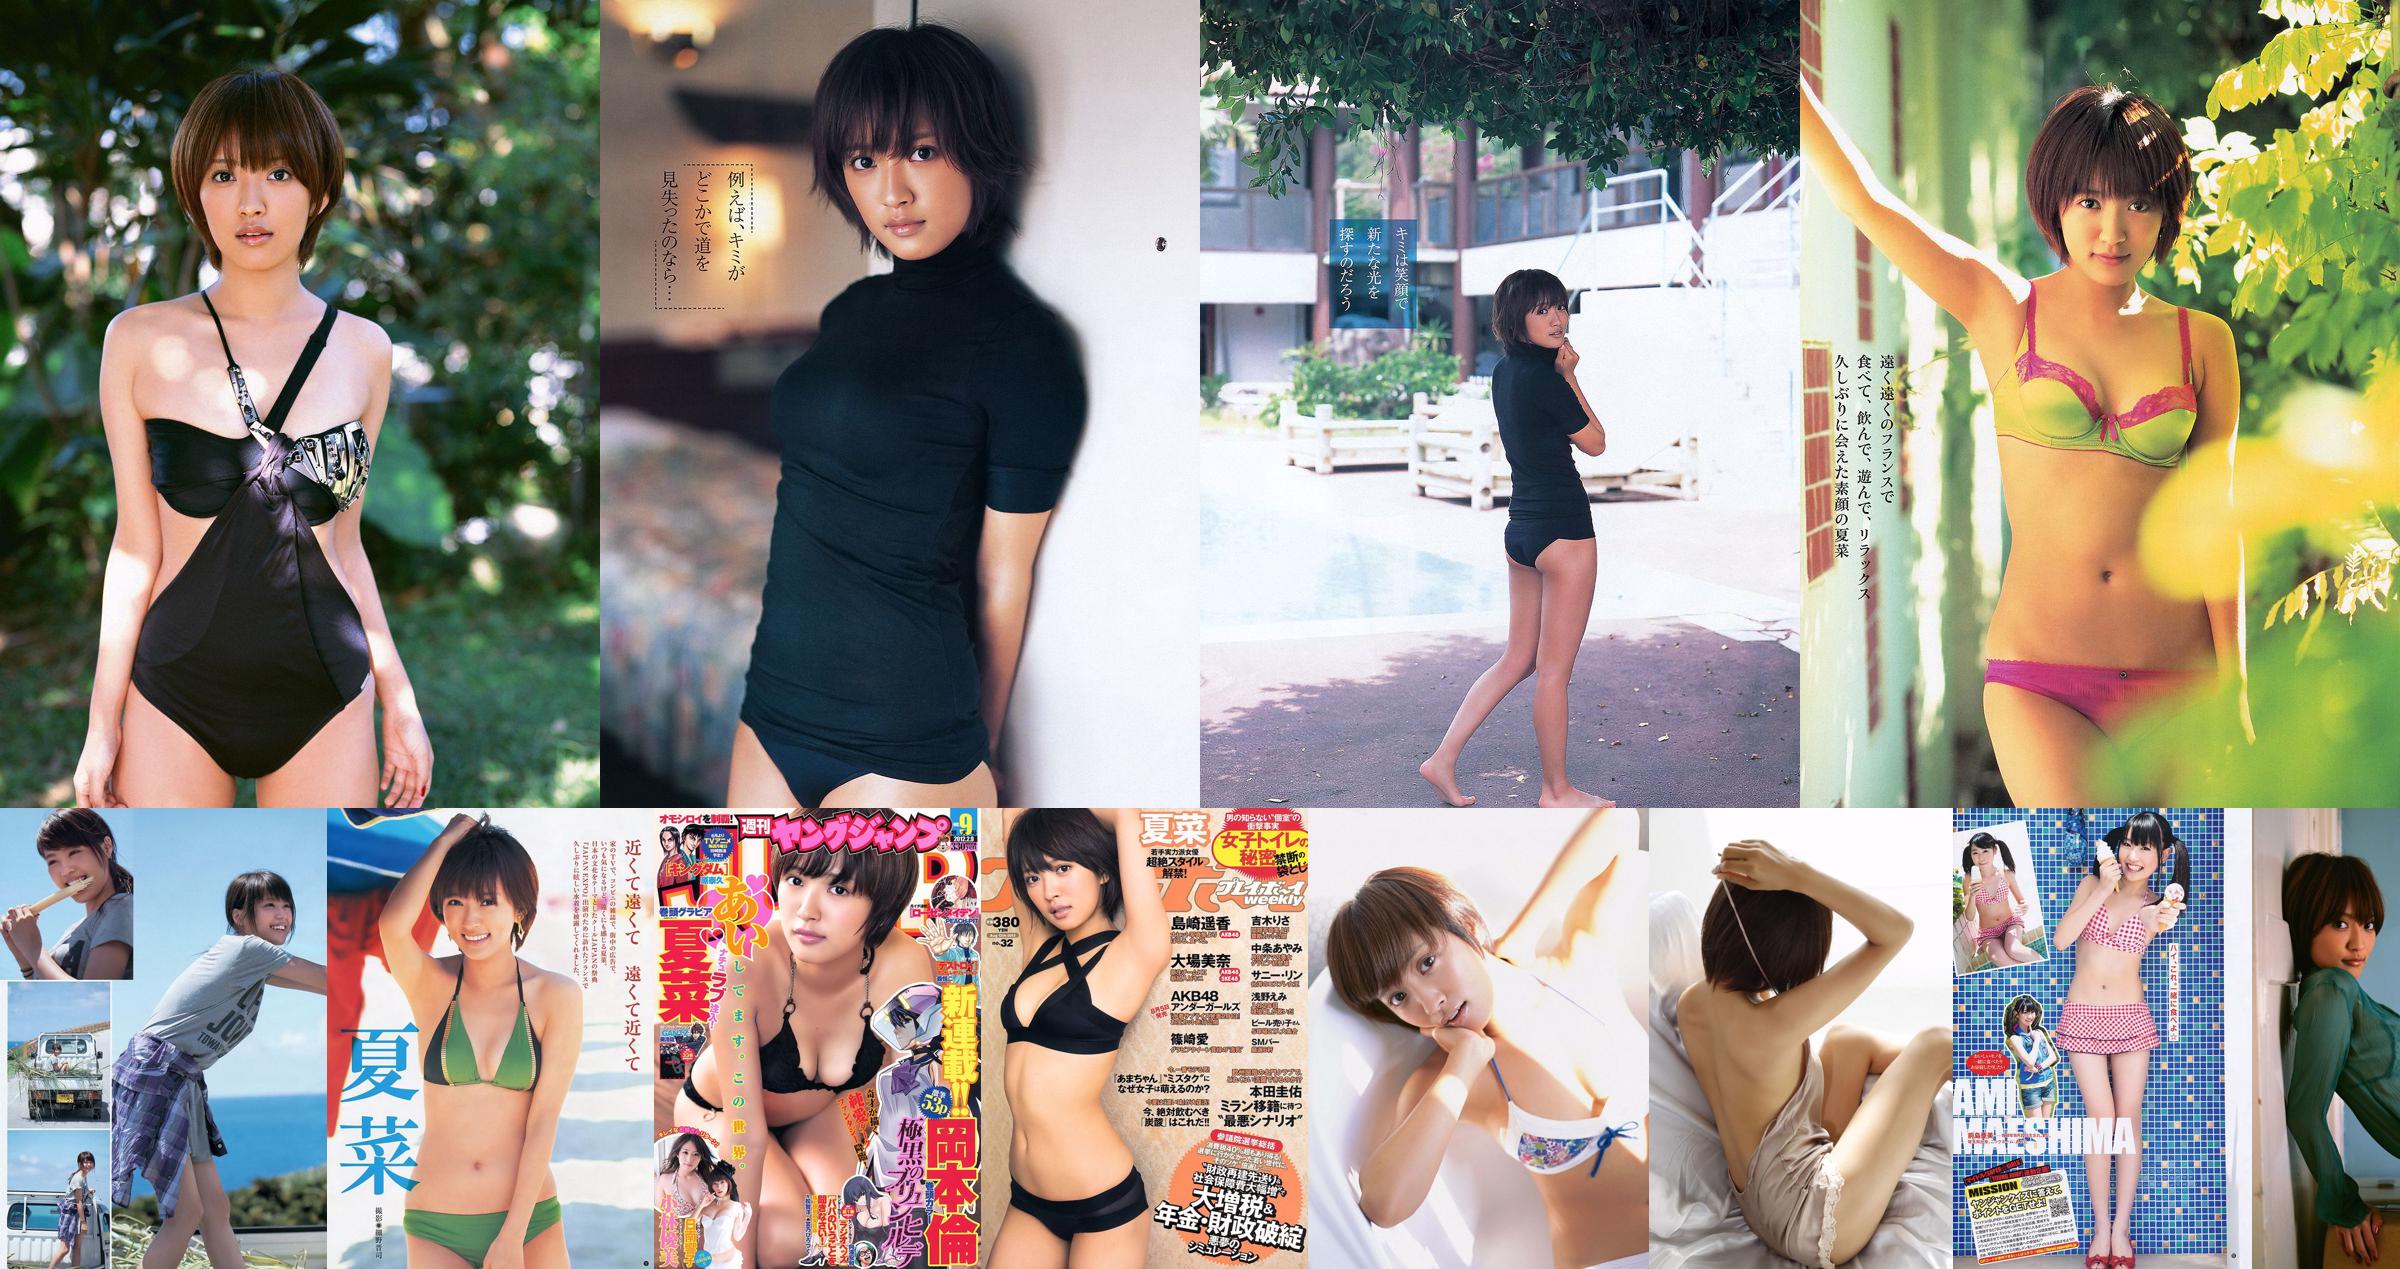 Natsuna Miru Shiroma Yuki Morisaki Michibata Angelica [Playboy semanal] 2014 No.06 Foto Mori No.f72bfd Página 5